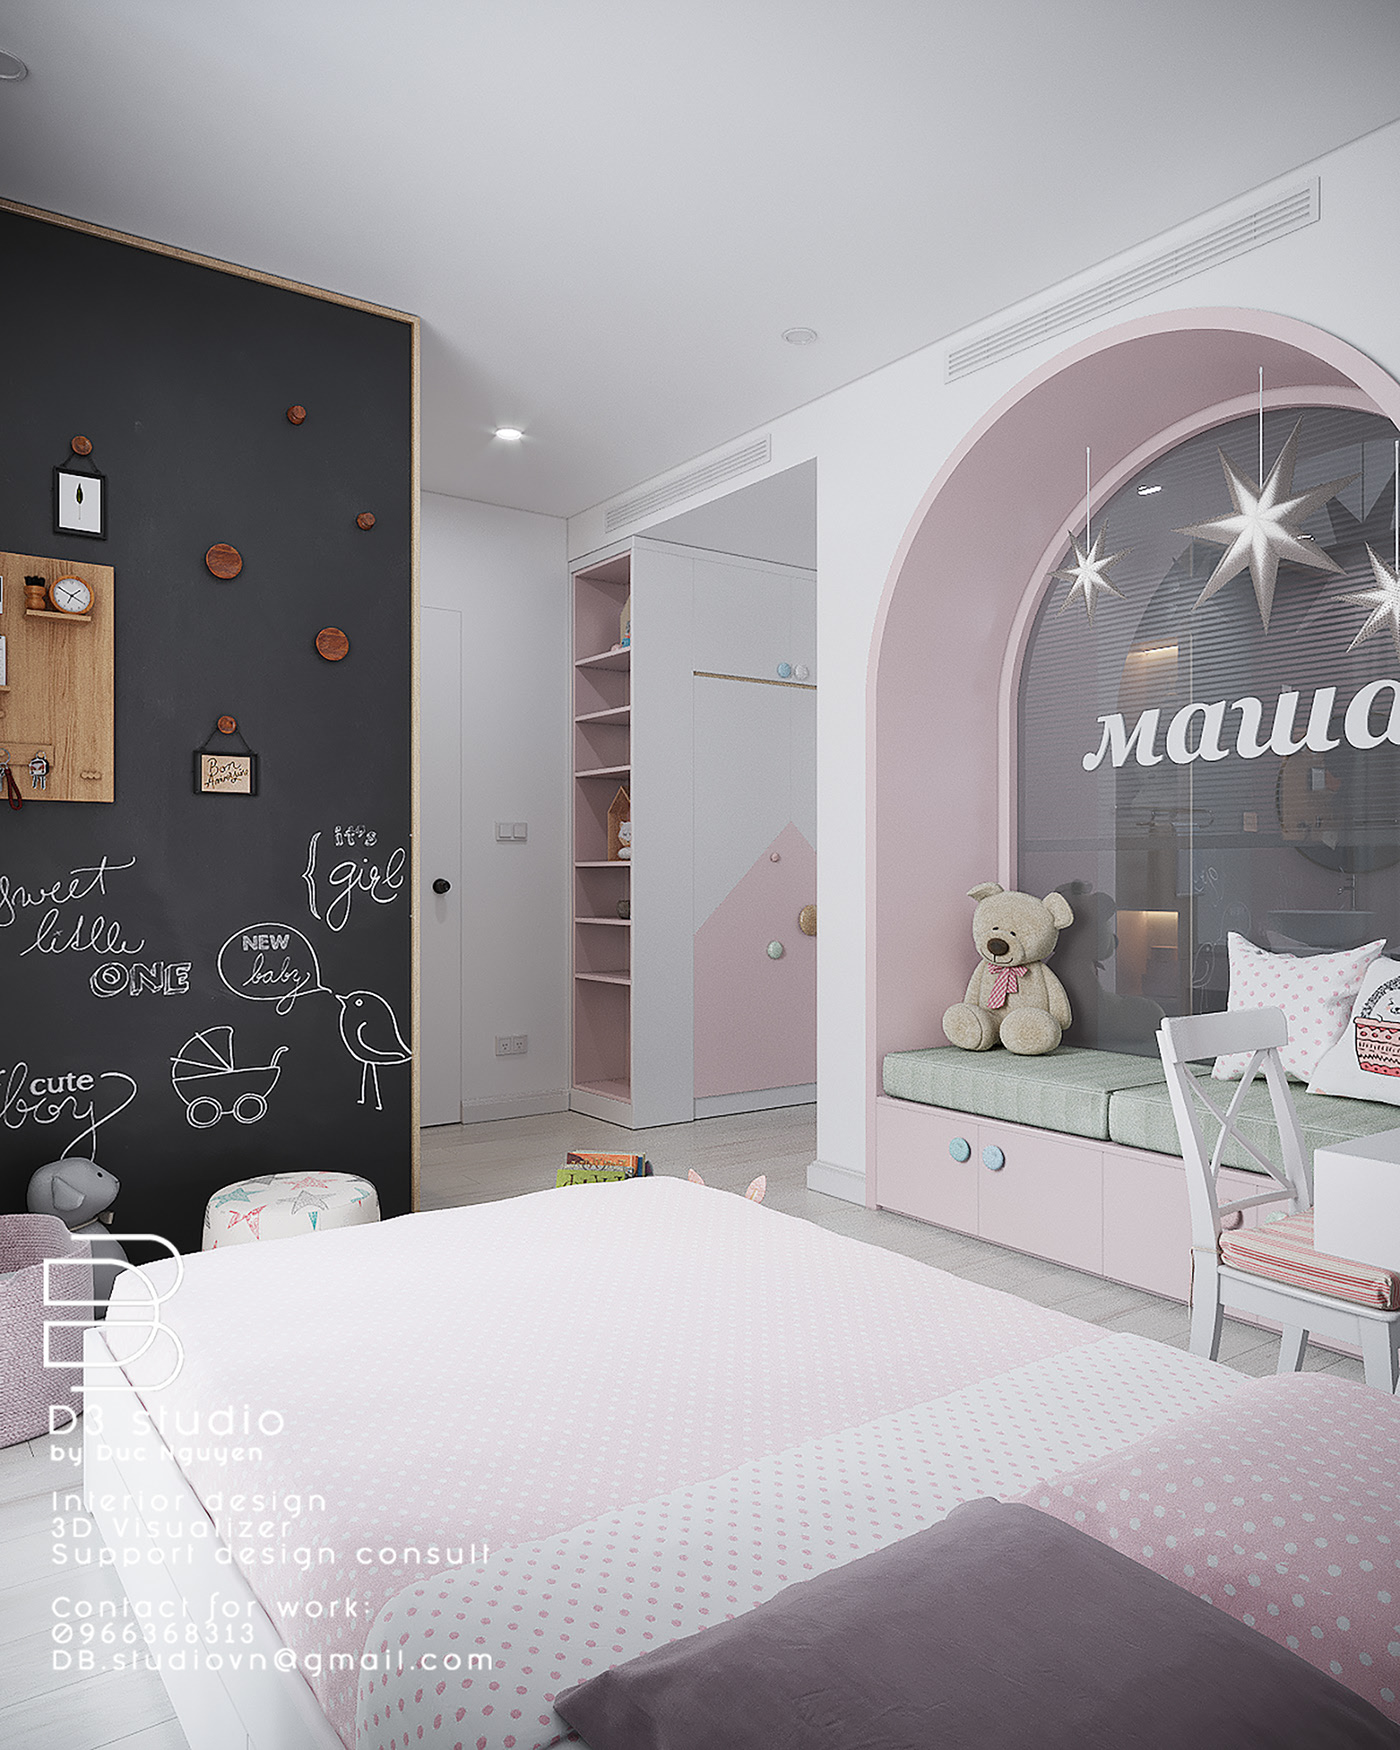 3D Interior Model Bed Room 0124 Scene 3dsmax